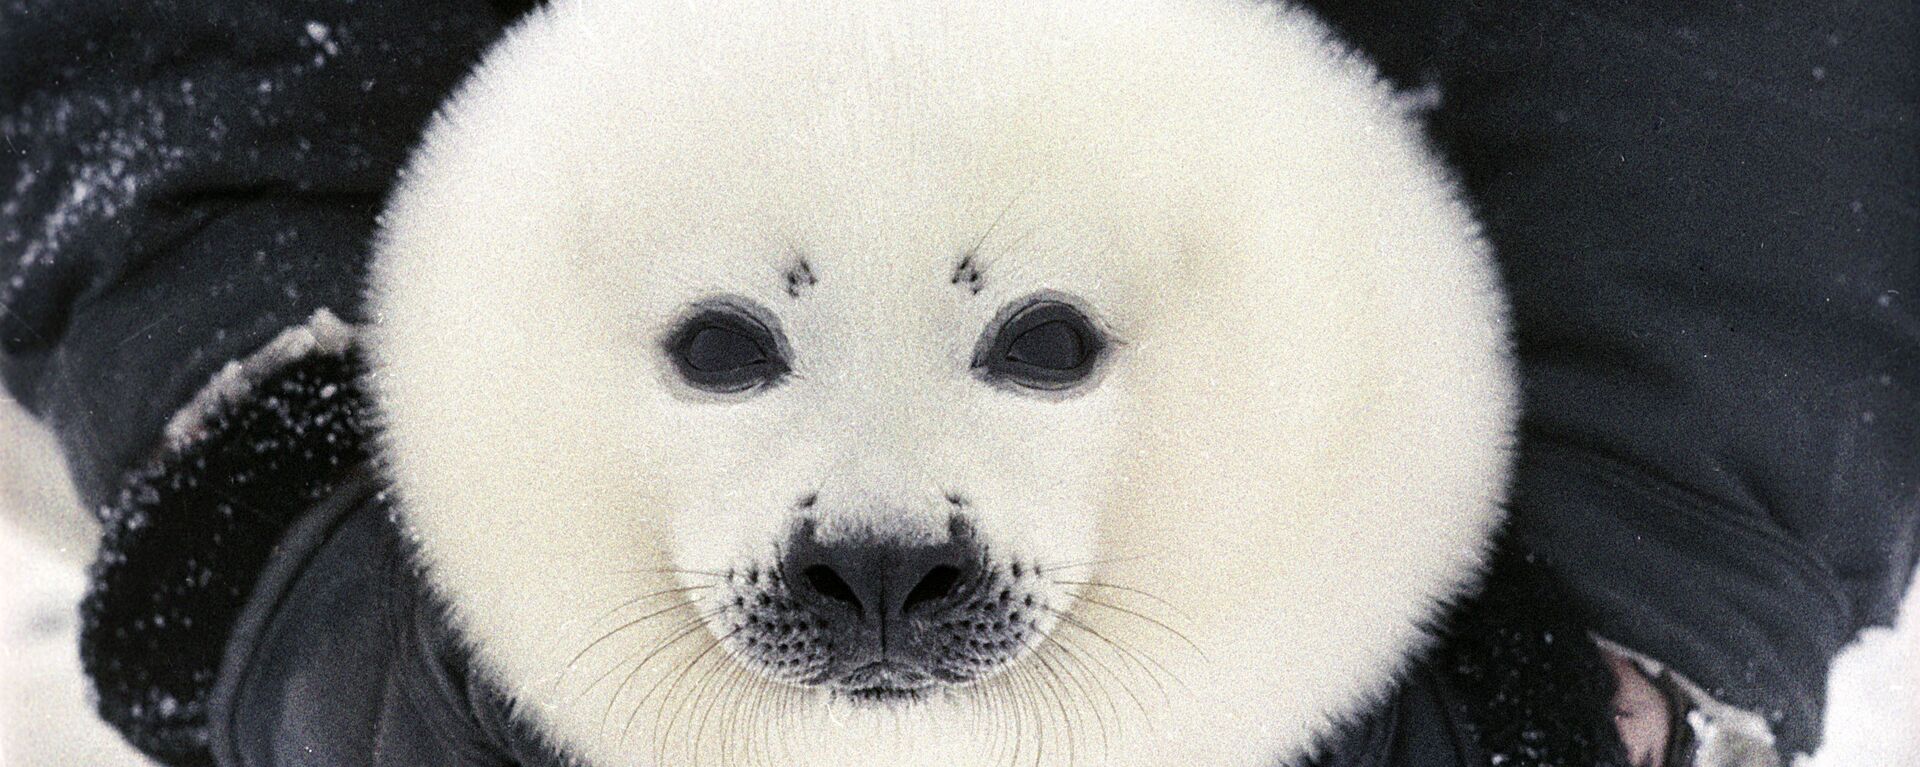 Белек, детеныш гренландского тюленя. - Sputnik Latvija, 1920, 02.04.2020